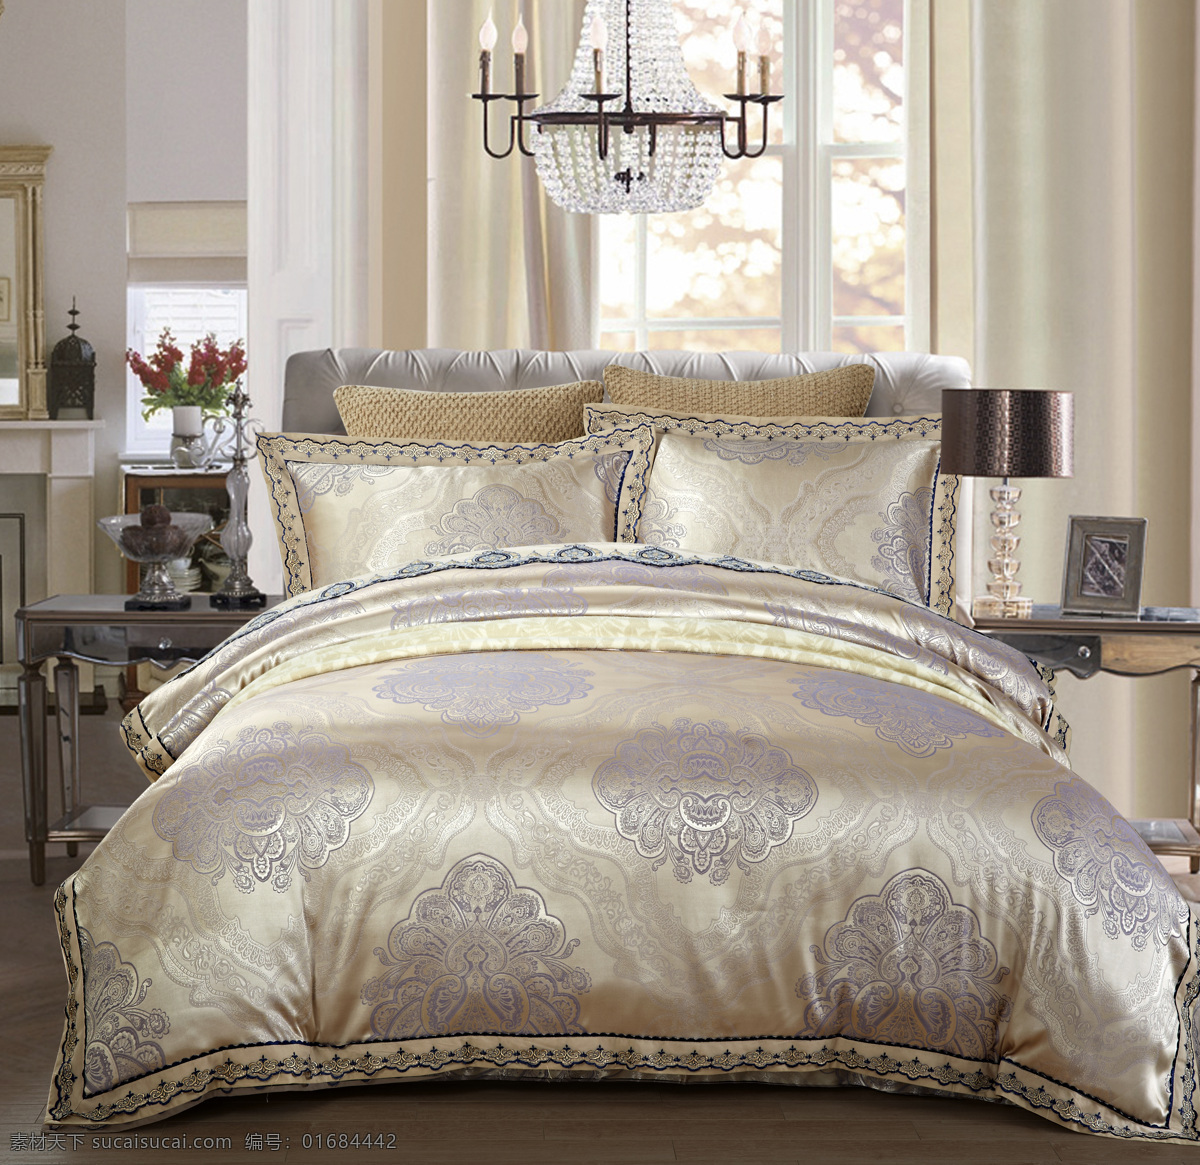 床上艺术 床上用品 枕头 床品 柔软的 温暖的 时尚 酒店用品 家纺 生活百科 家居生活